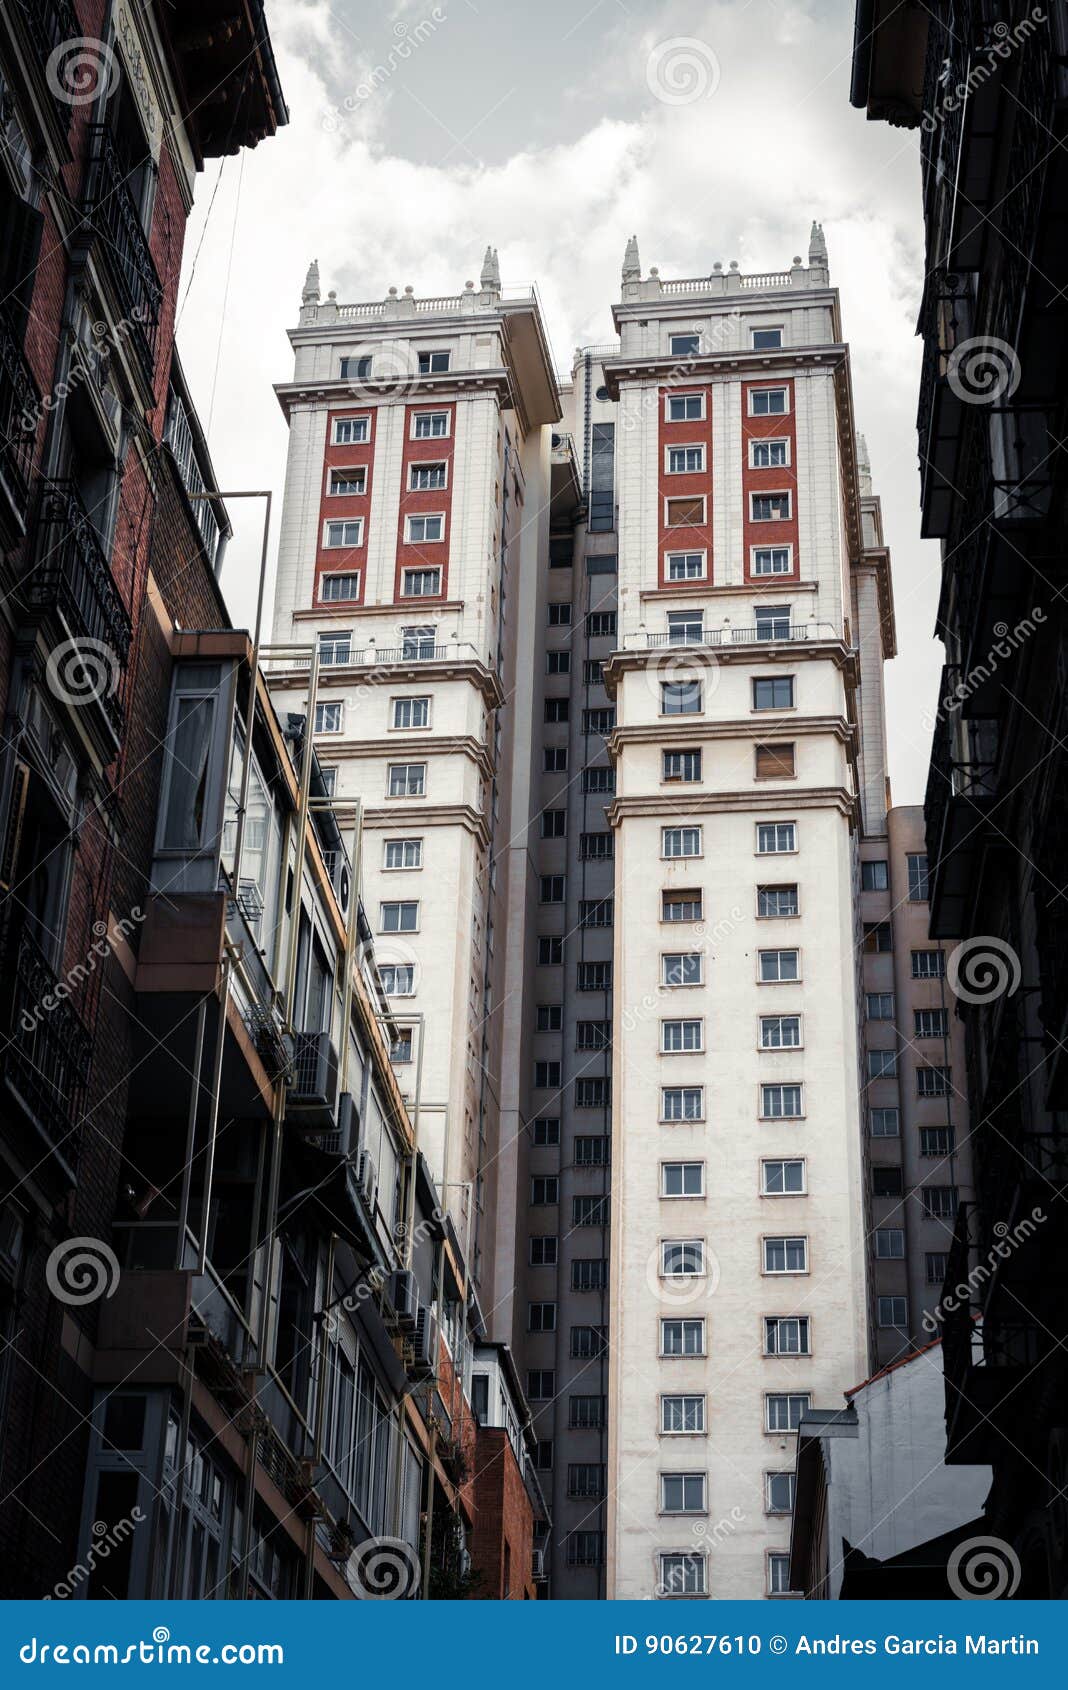 edificio espaÃÂ±a art deco skyscraper in plaza de espaÃÂ±a